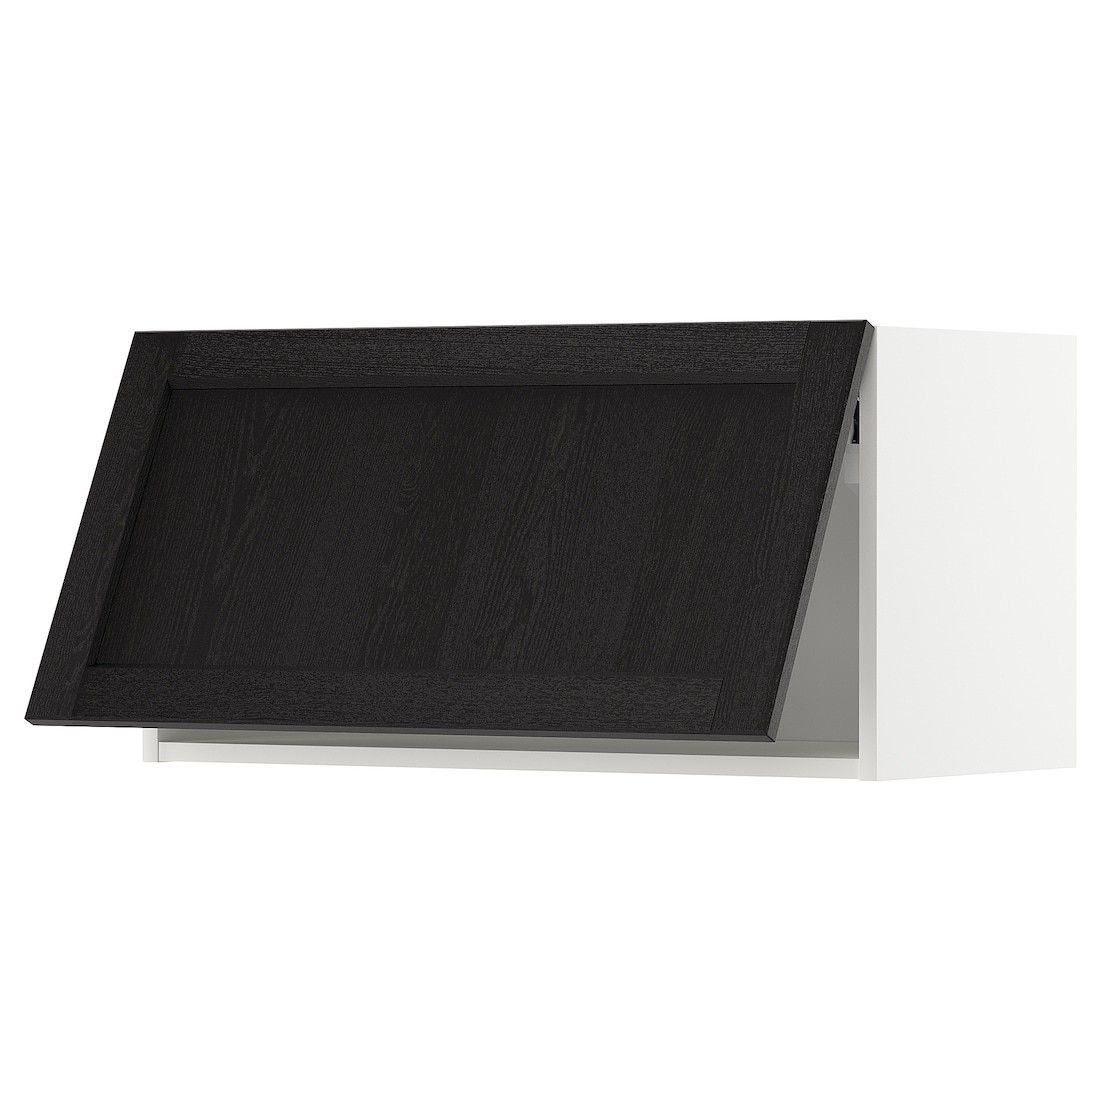 METOD МЕТОД Навесной горизонтальный шкаф, белый / Lerhyttan черная морилка, 80x40 см